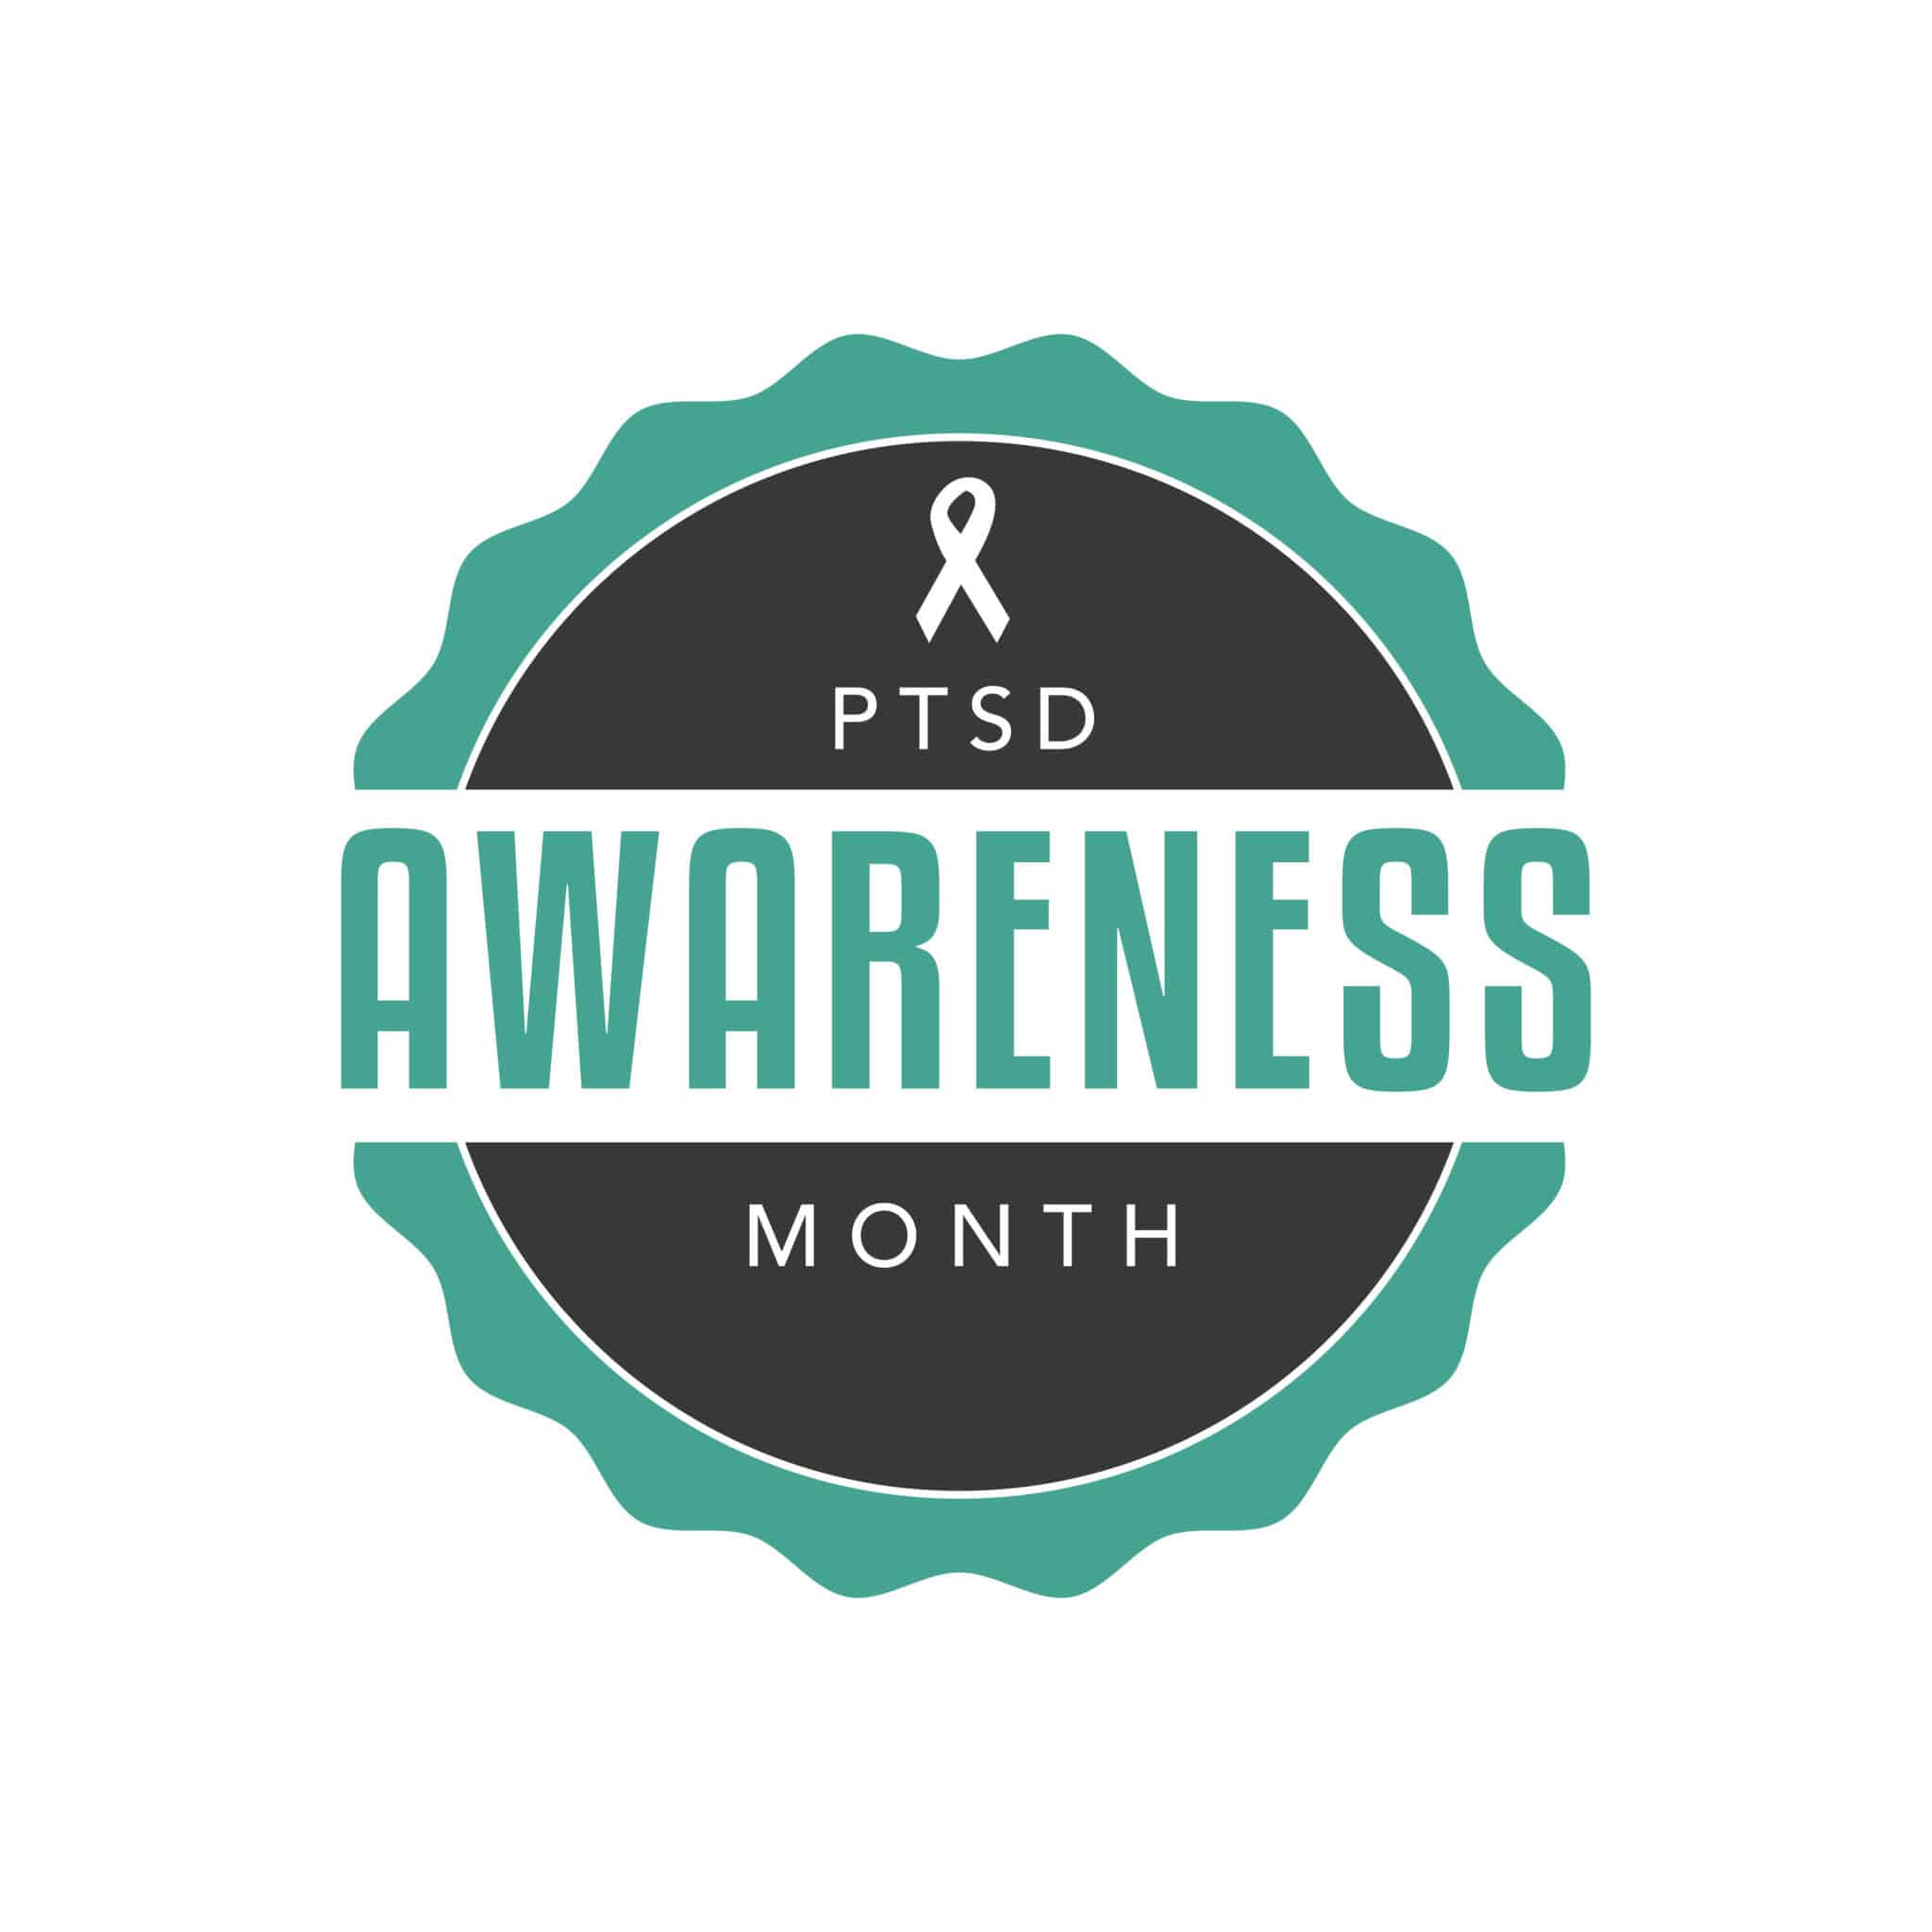 PTSD Awareness Month Label